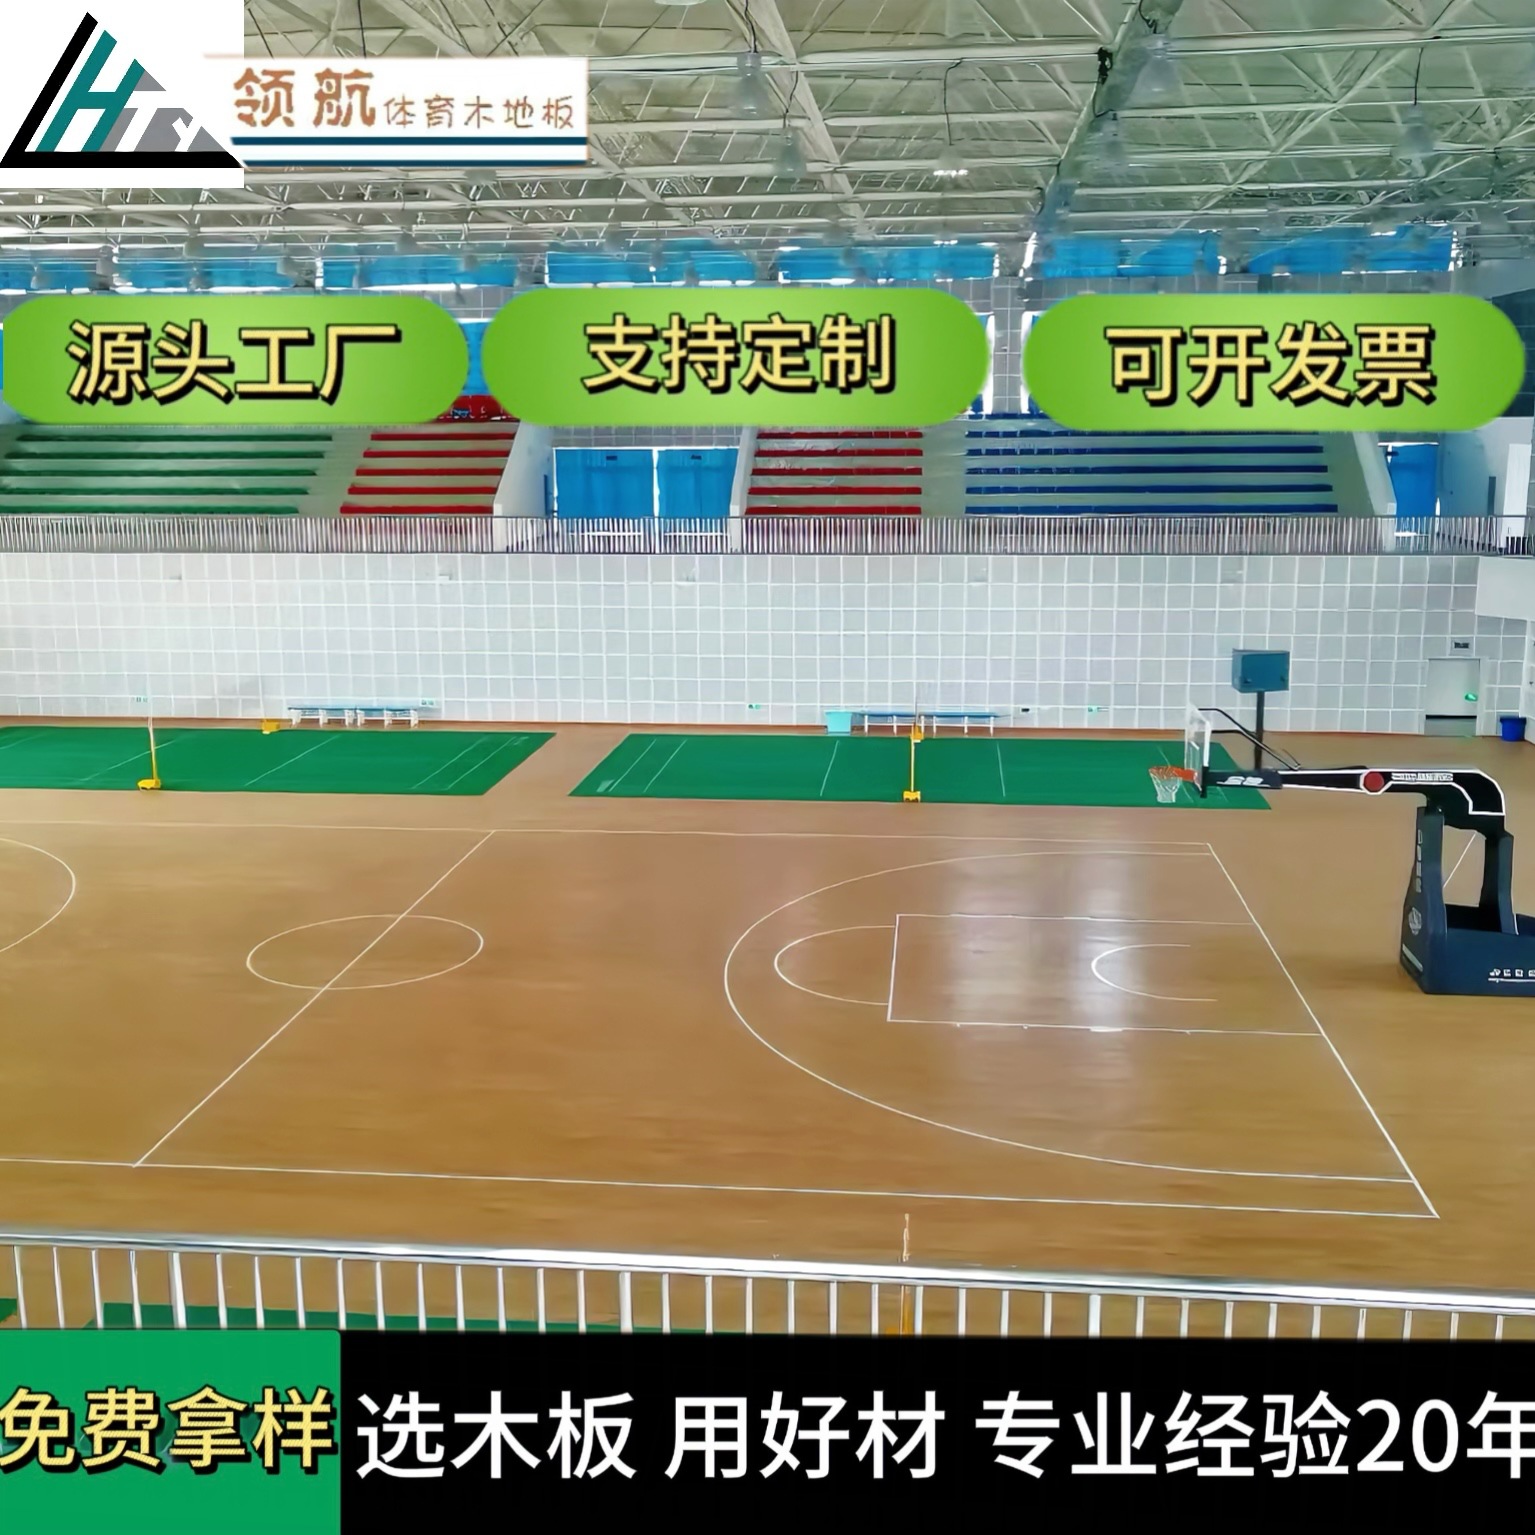 篮球馆运动木地板色木（国产硬枫）抗压体育厂家室内羽毛球馆专用